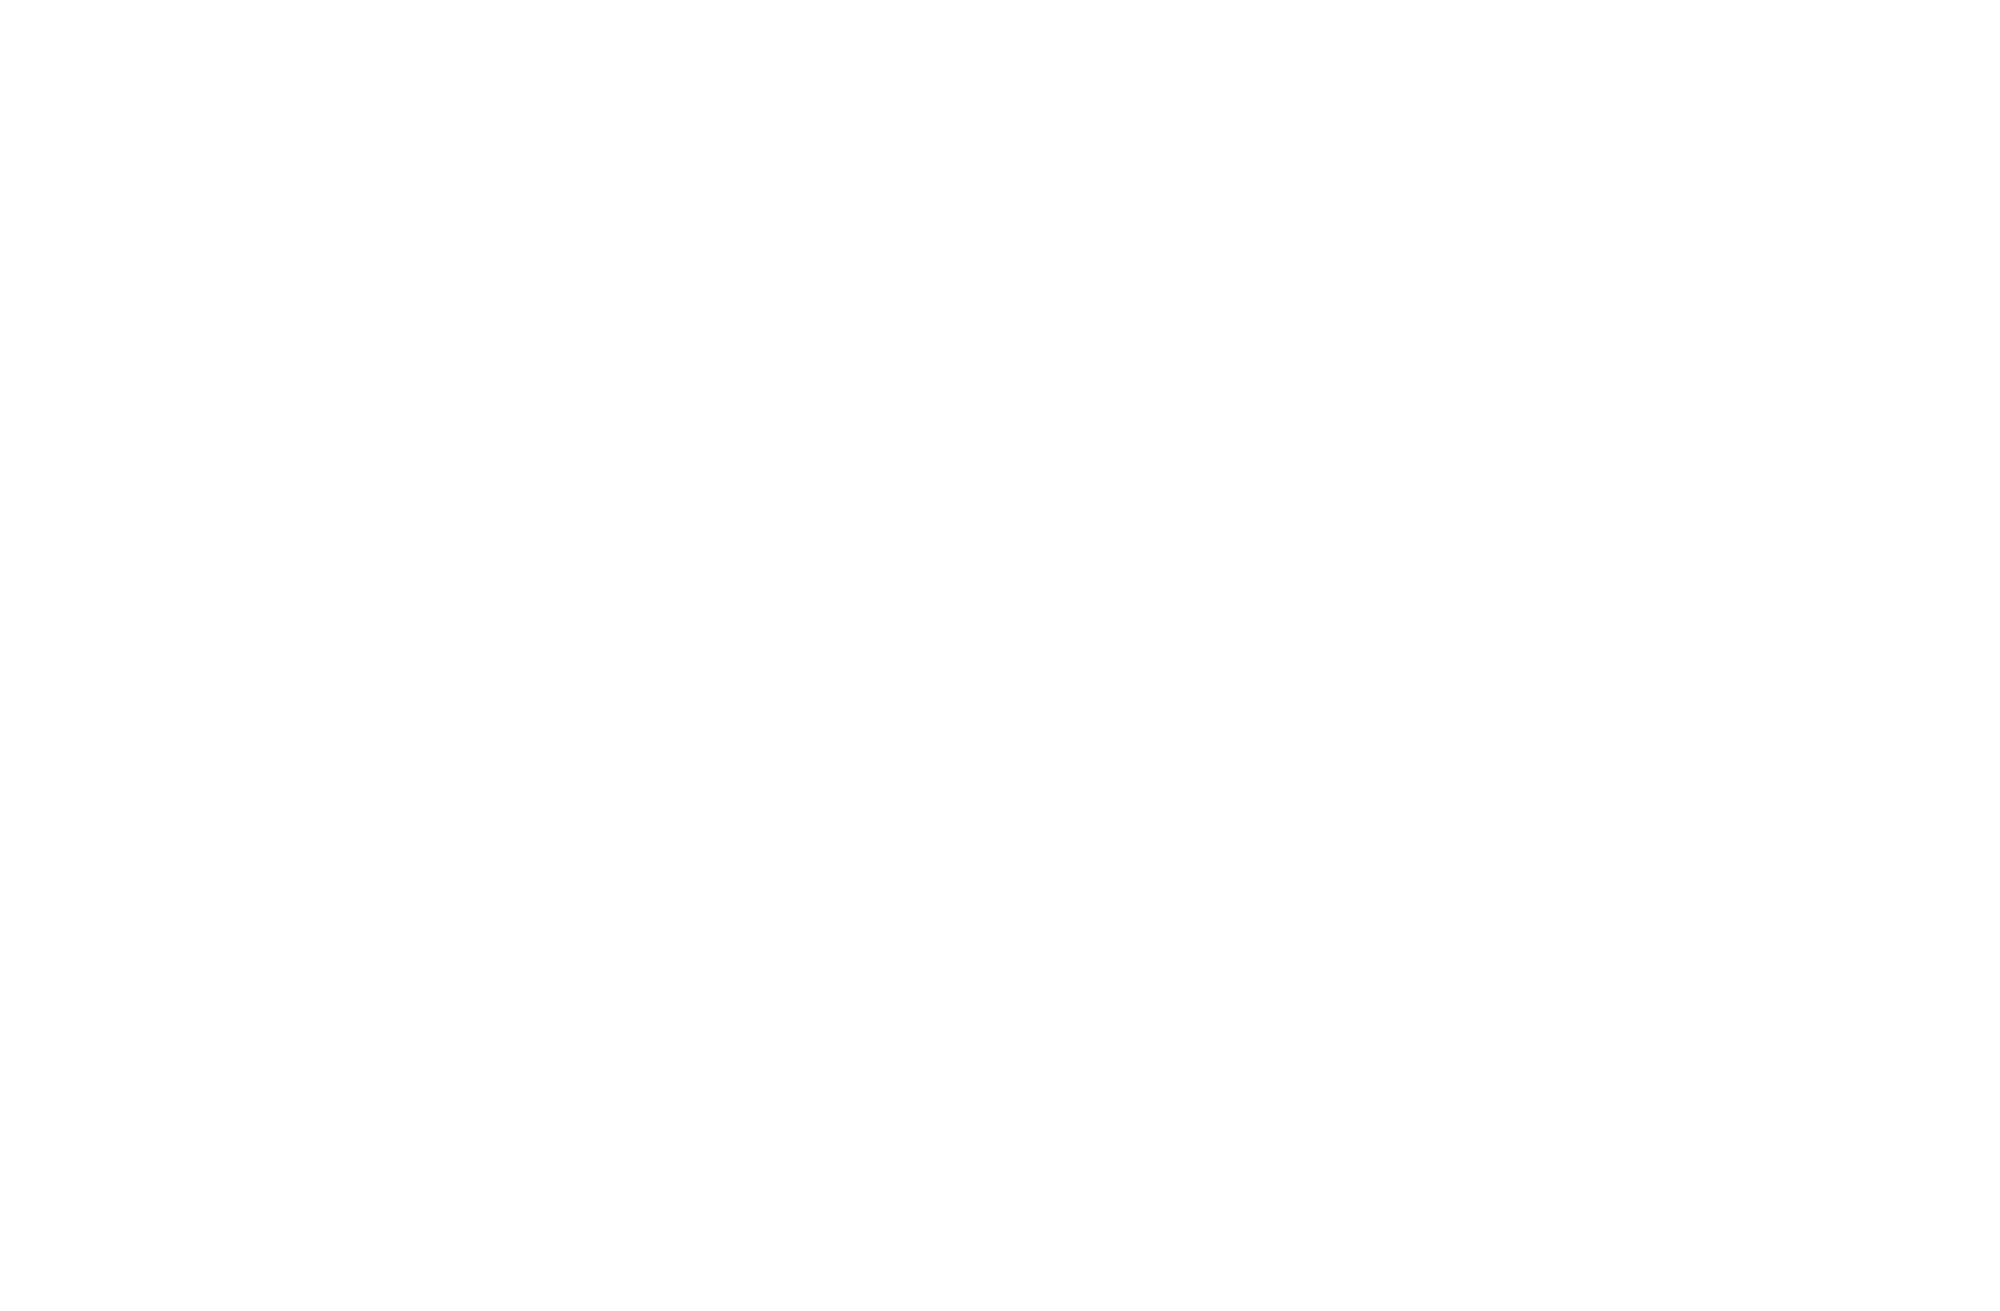 UNICORN UC100V